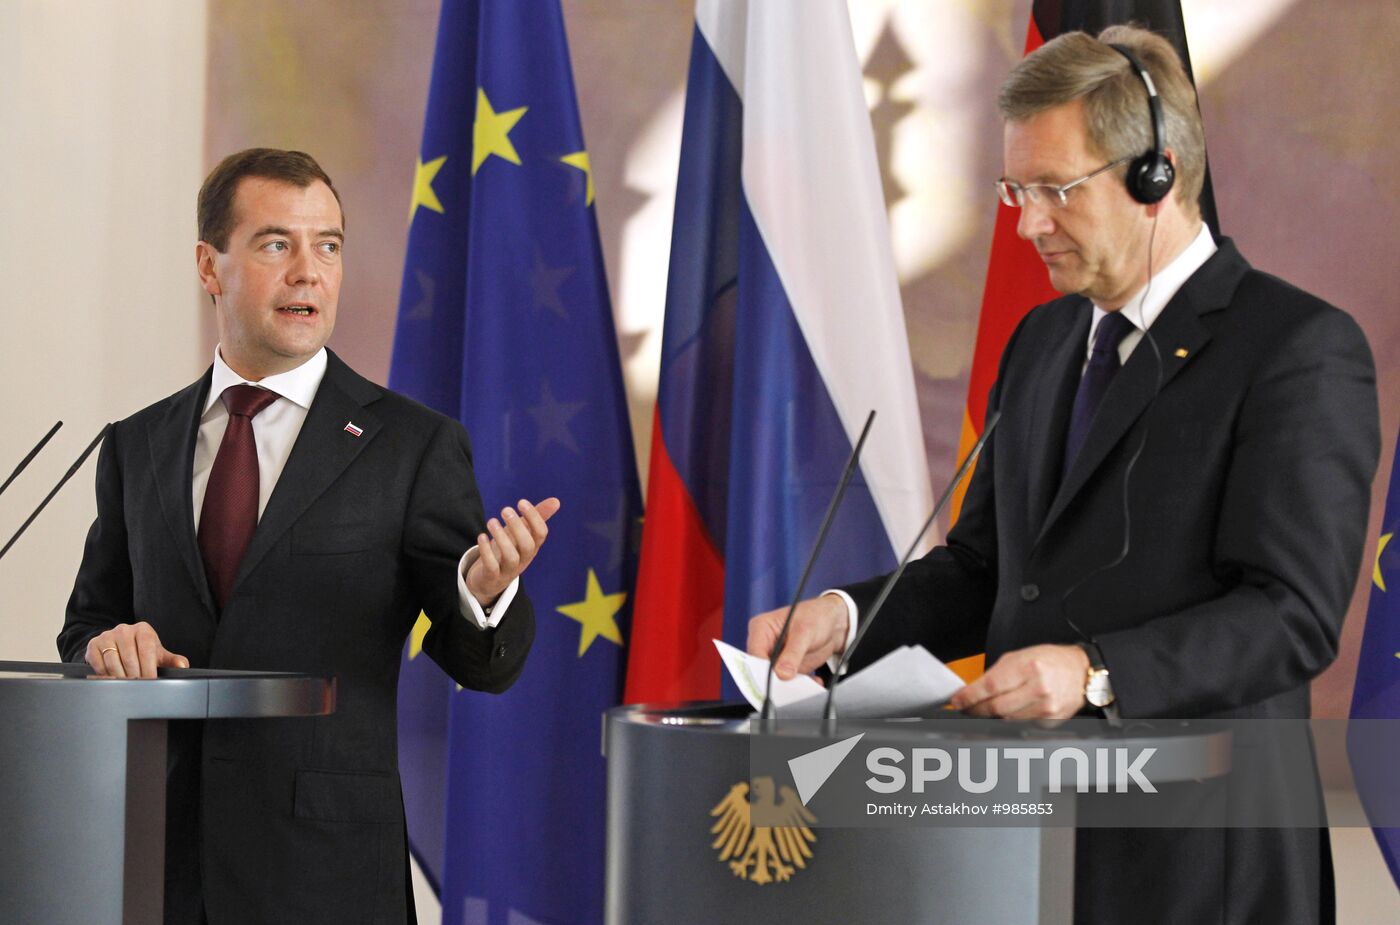 Dmitry Medvedev arrives in Germany on official visit